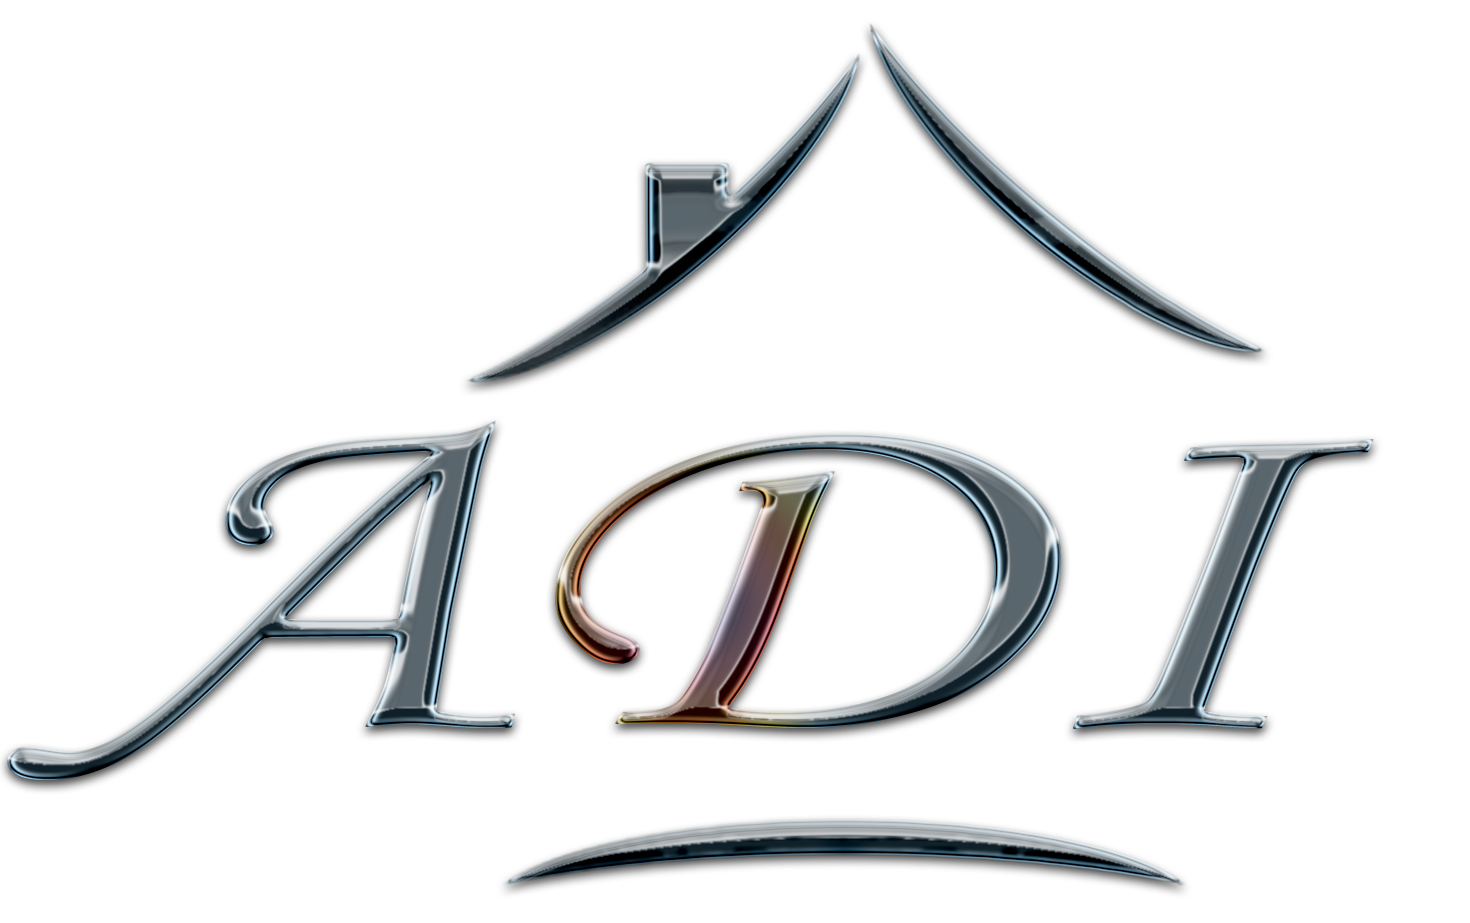 Logo A.D.I.